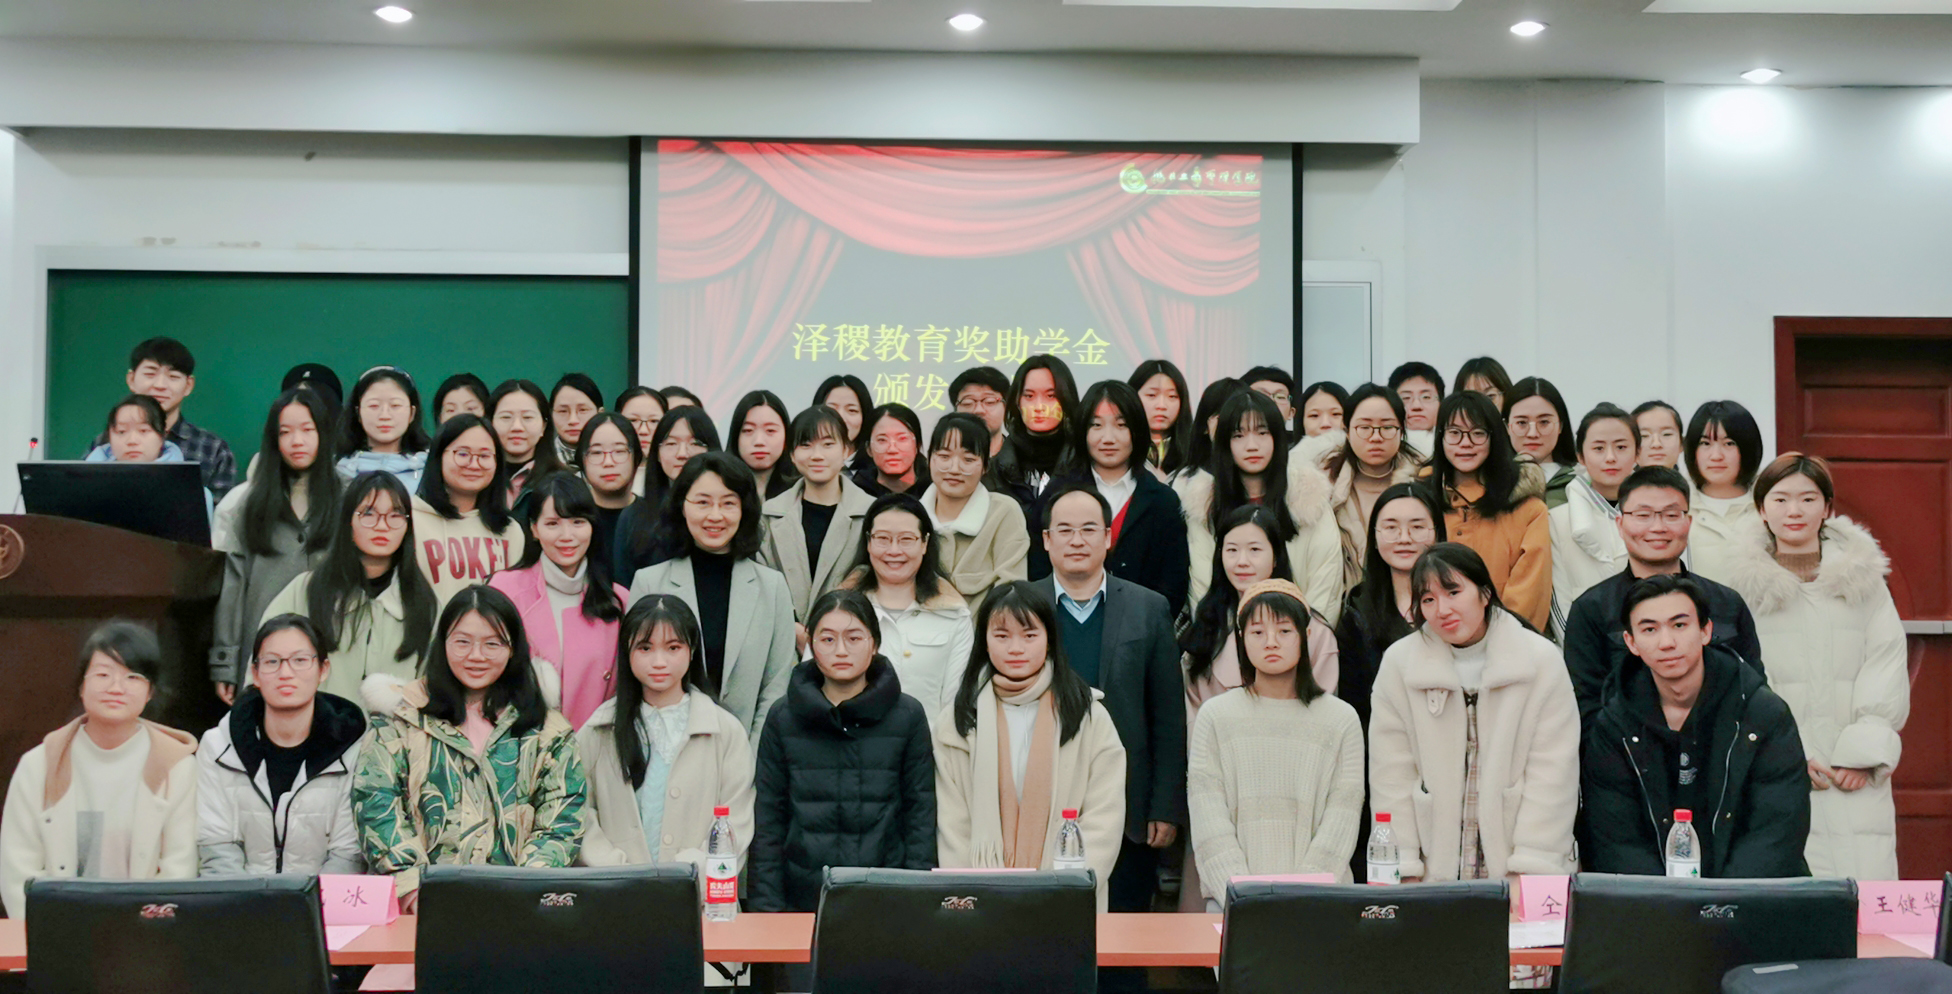 热烈祝贺东华大学第一届泽稷教育基金颁奖典礼成功举办